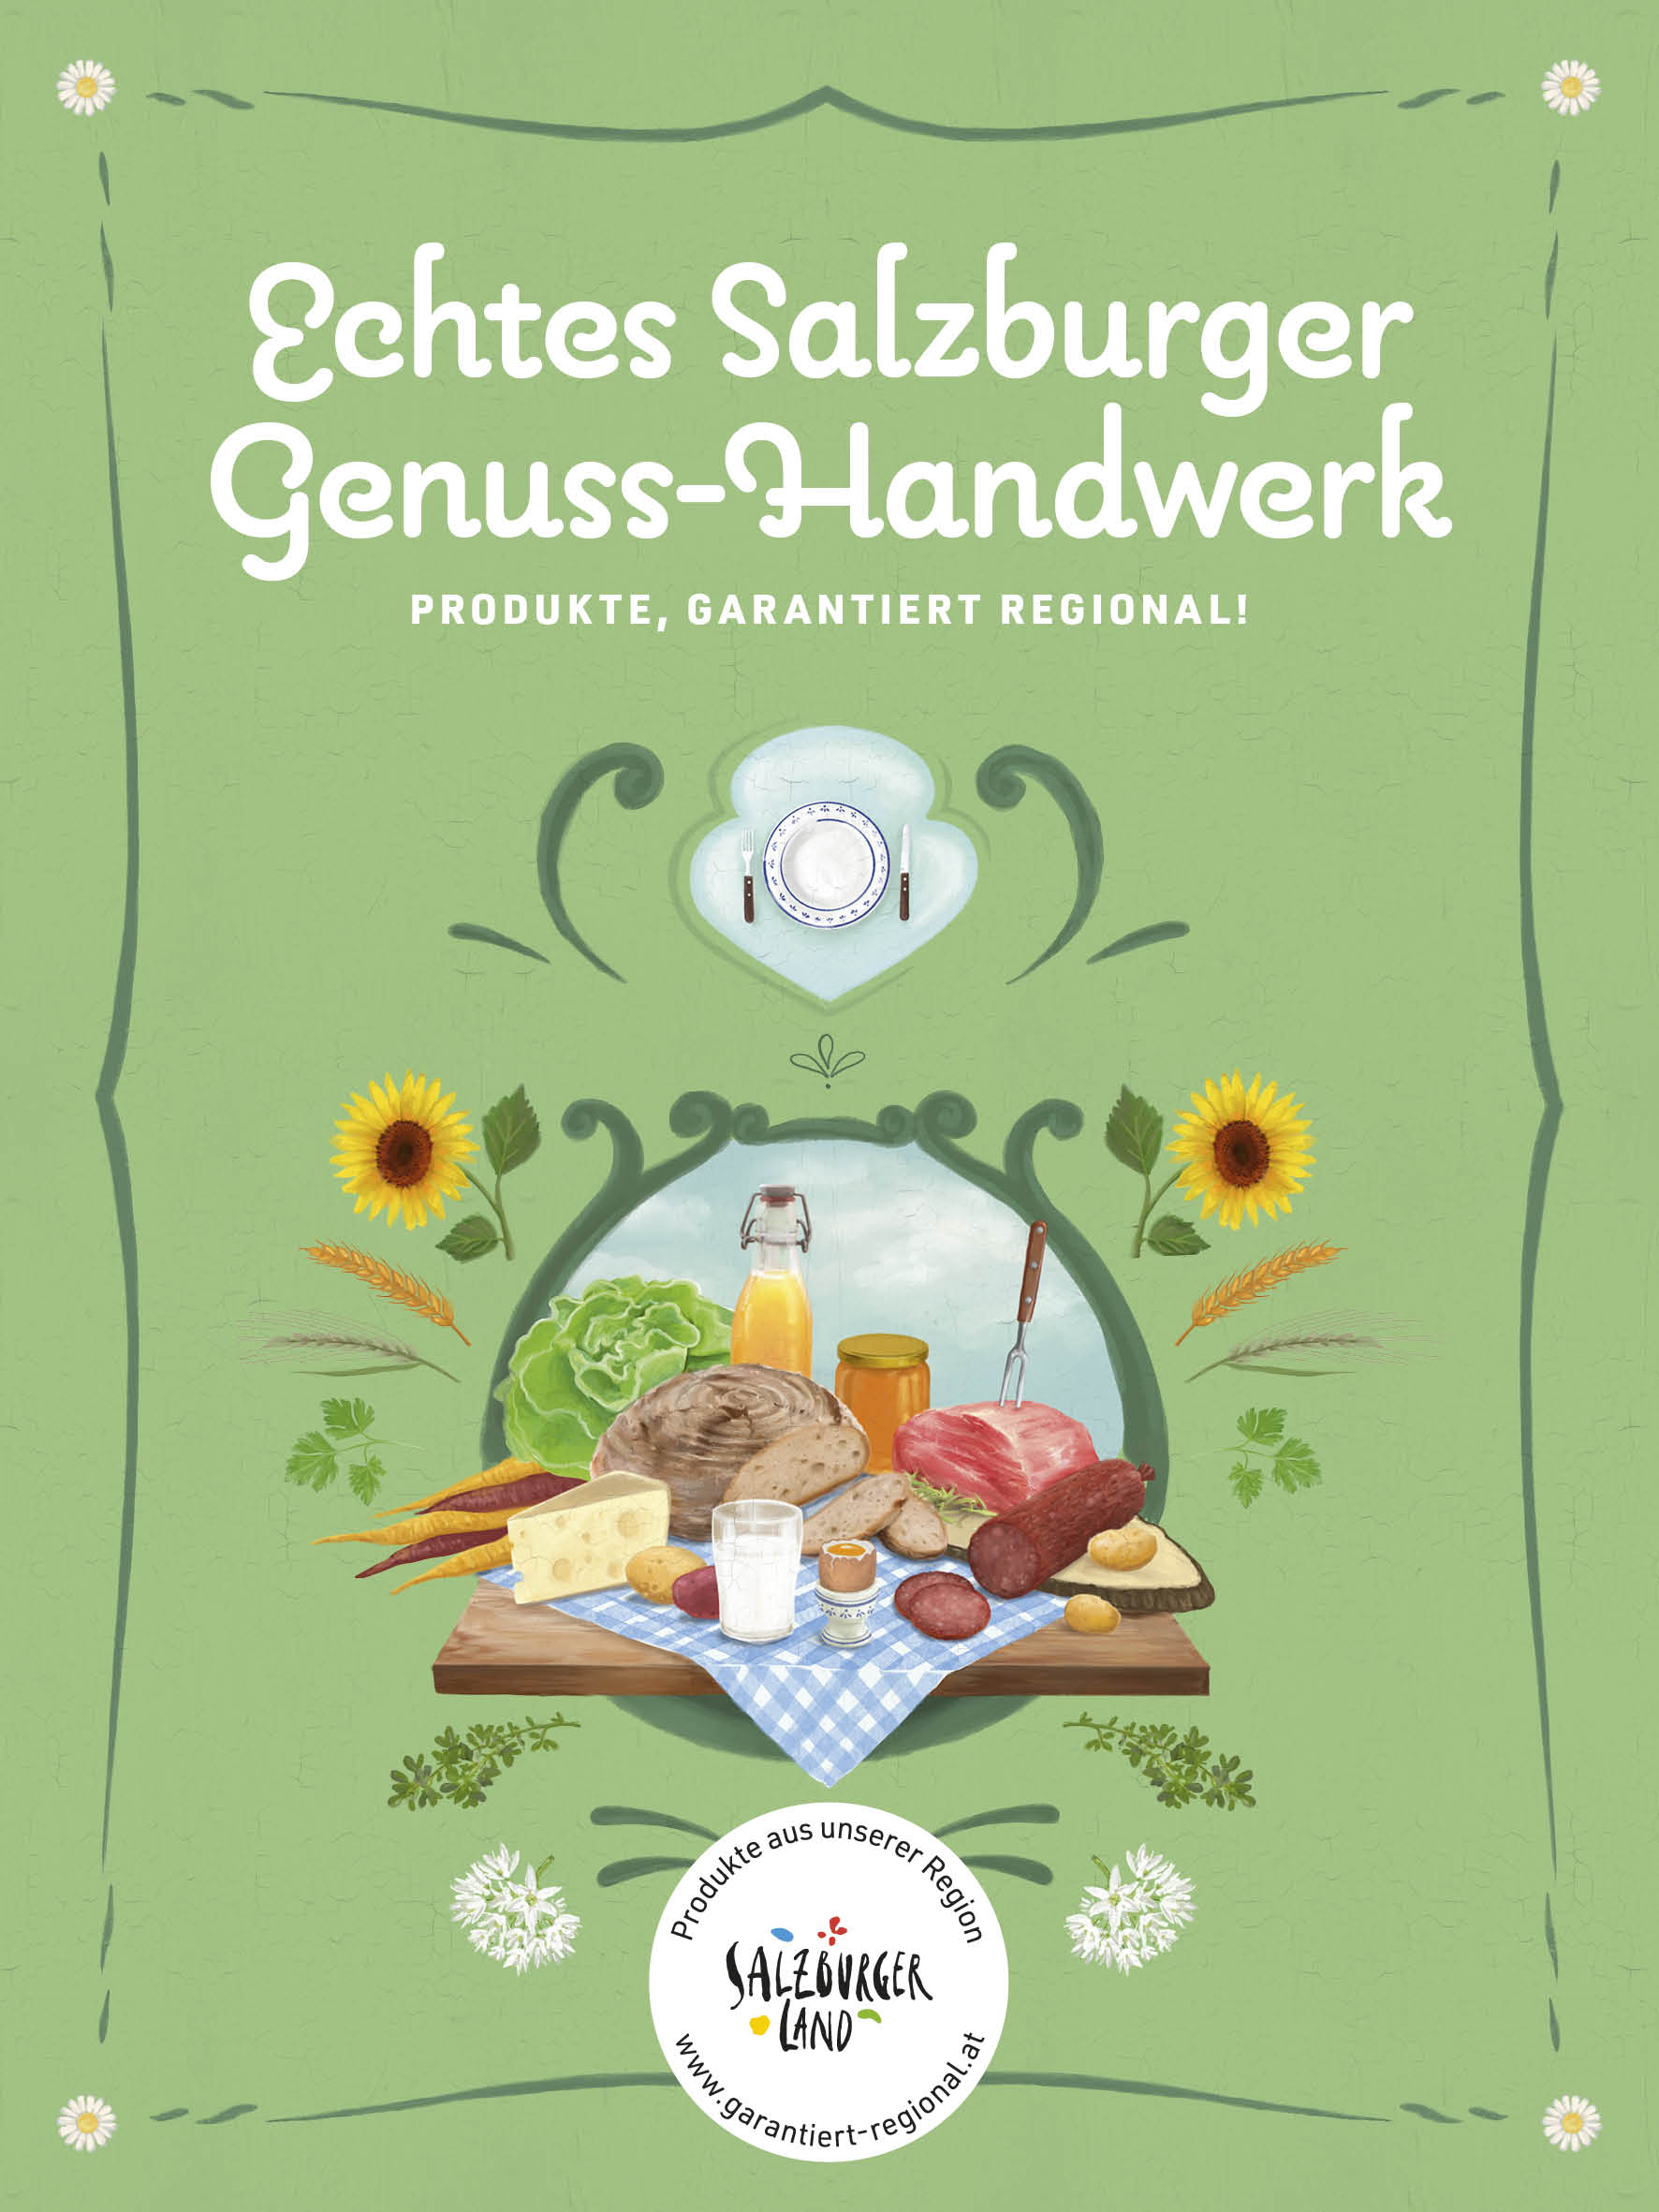 Salzmanufaktur Salitri - Eva und Helmut Brudl bei Salzburg schmeckt